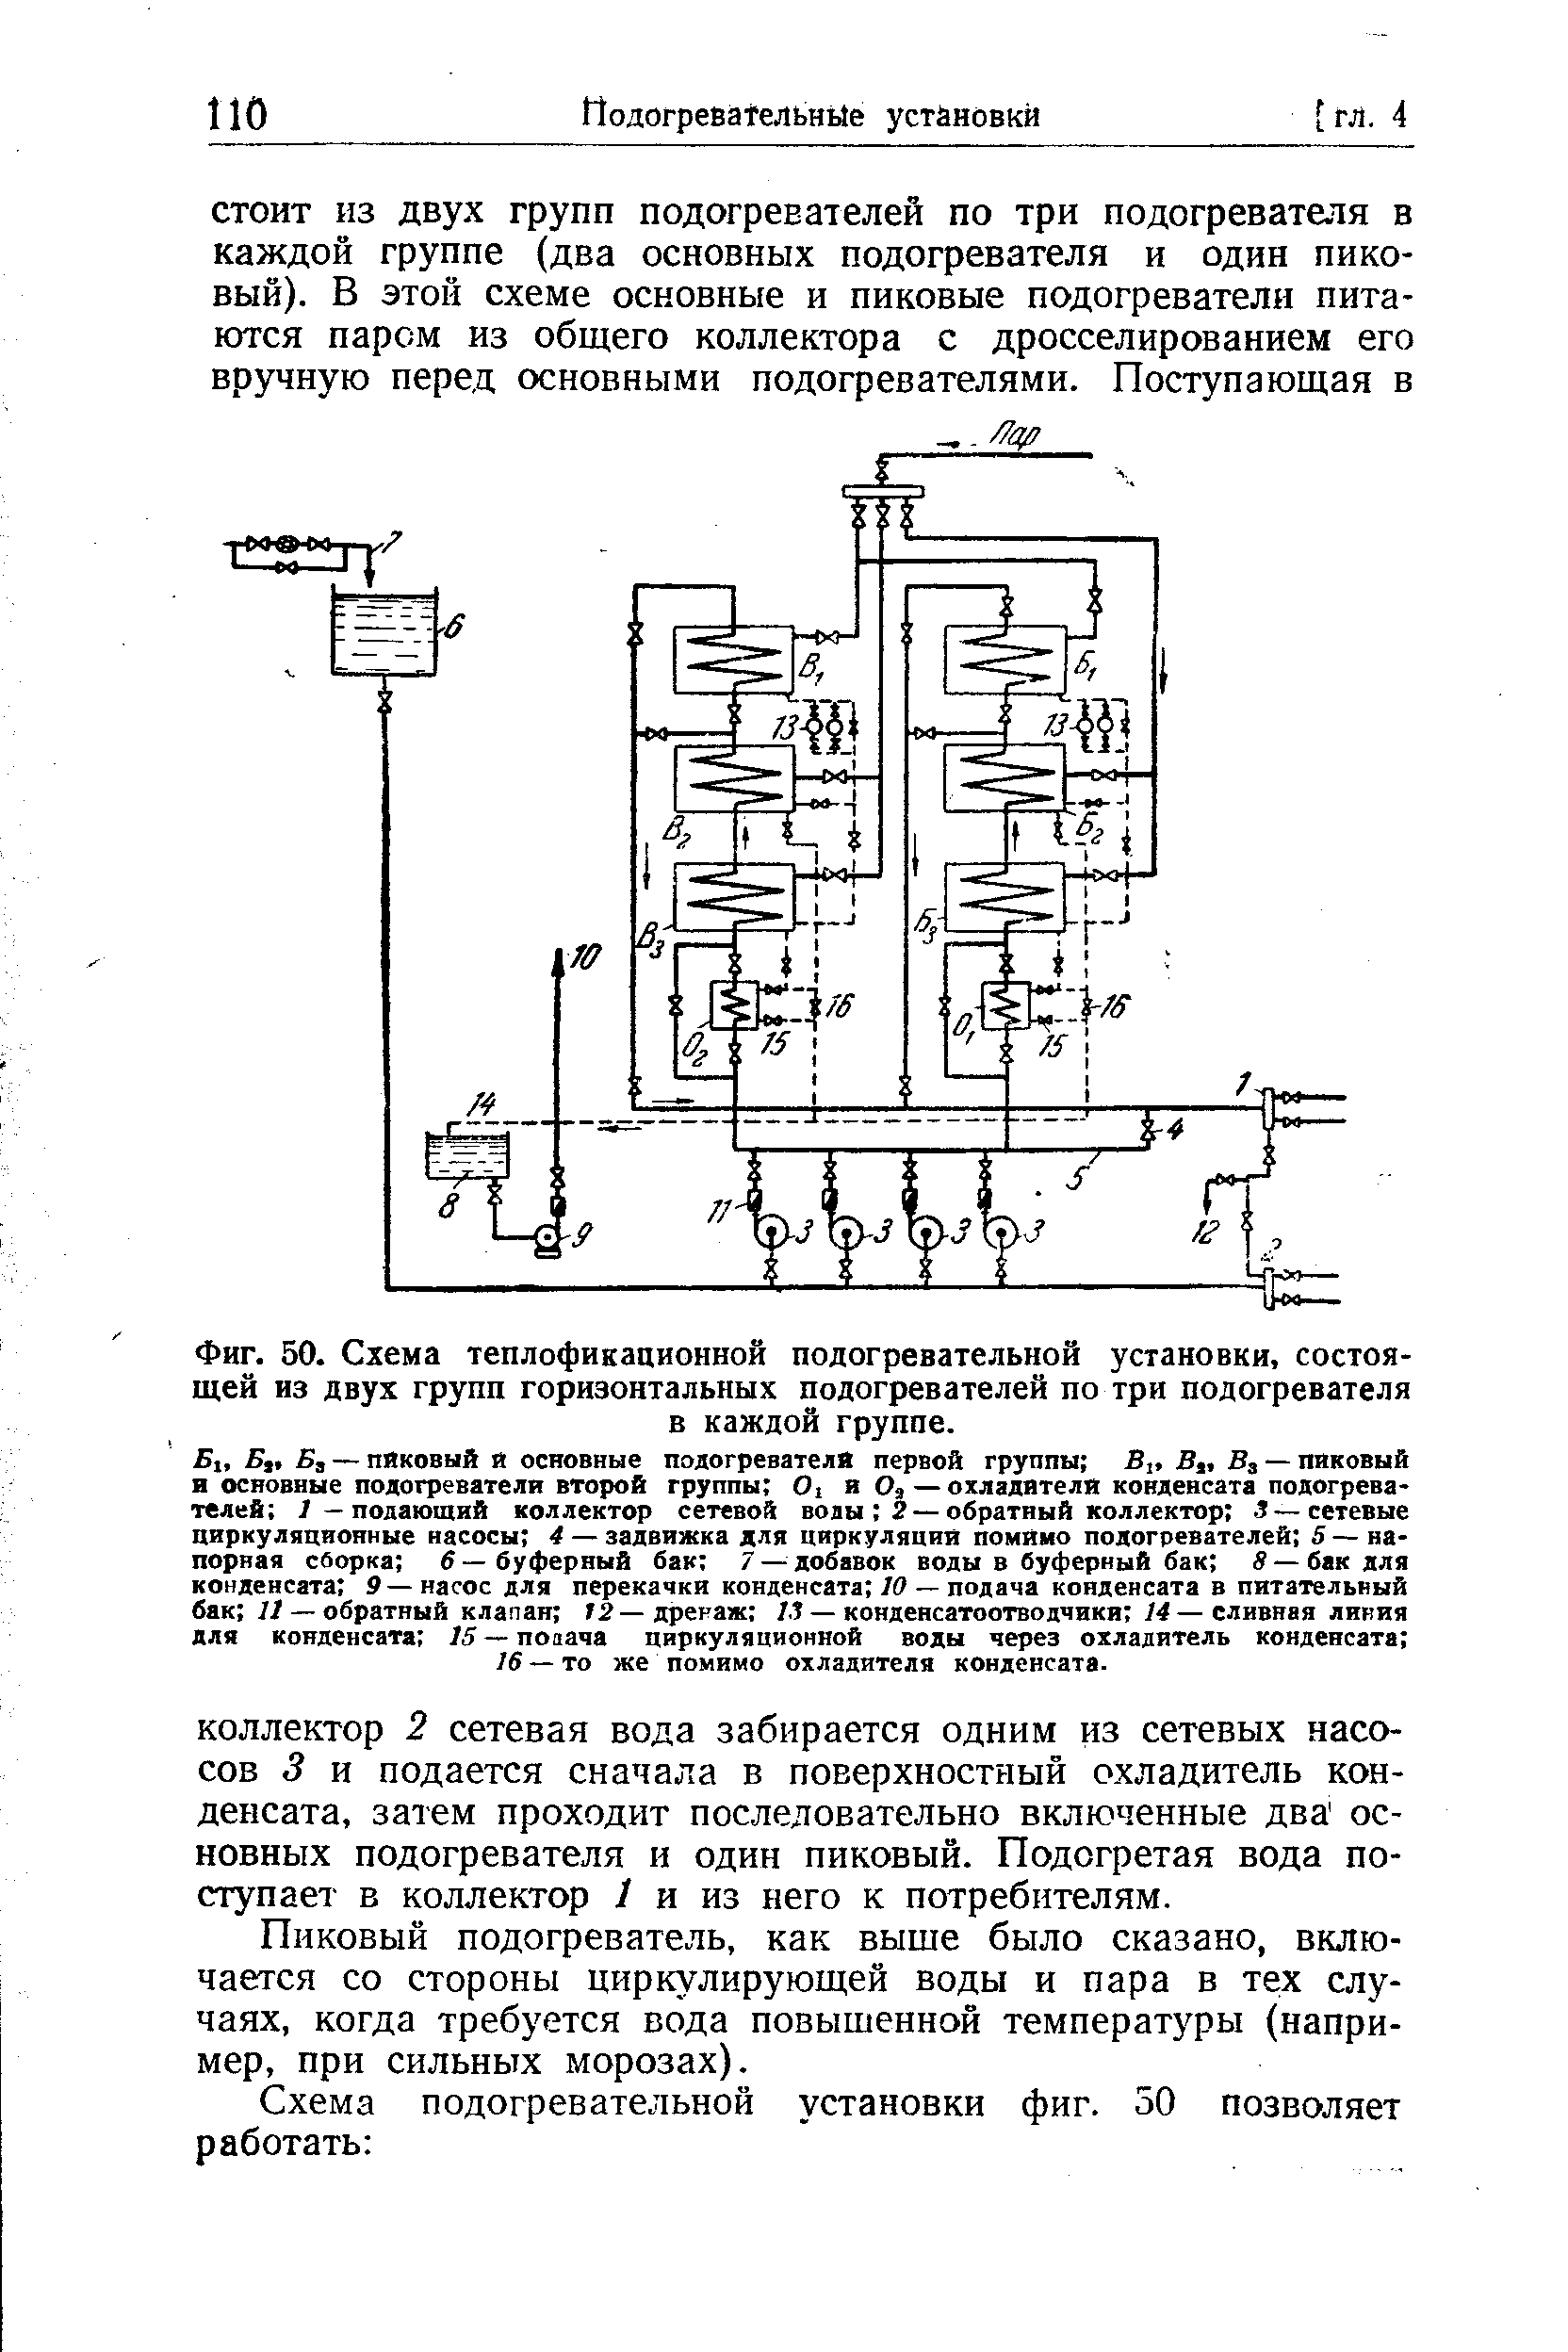 Фиг. 50. Схема теплофикационной подогревательной установки, состоящей из двух групп горизонтальных подогревателей по три подогревателя
